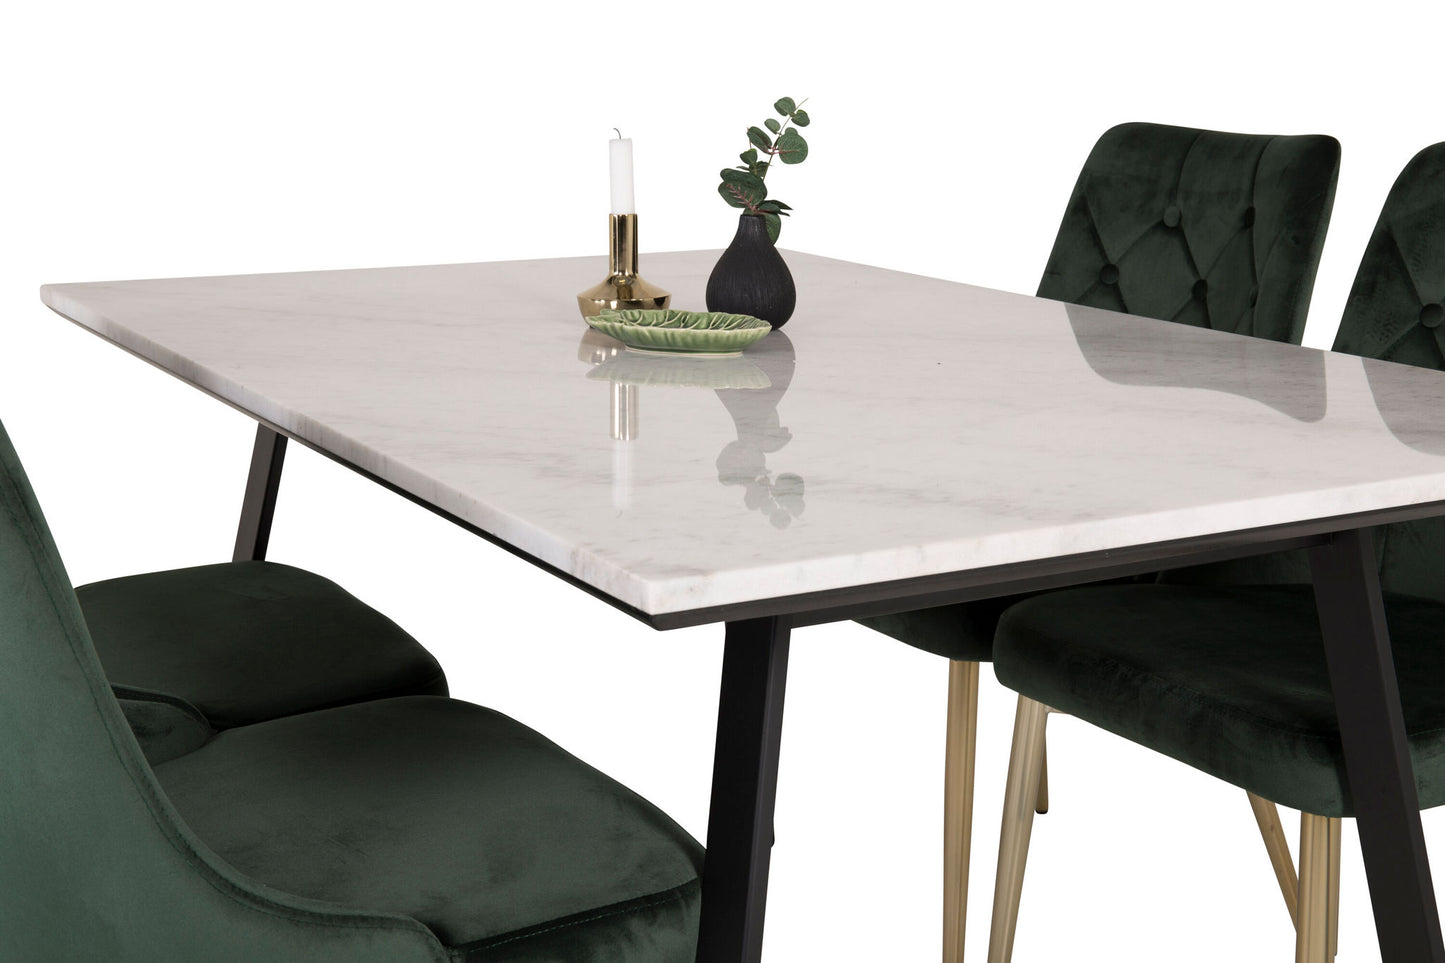 Estelle - Spisebord, 140*90 - Hvid Marmor / Sorte ben - velour Deluxe Stol - Moss Grøn/Mat messing ben 4